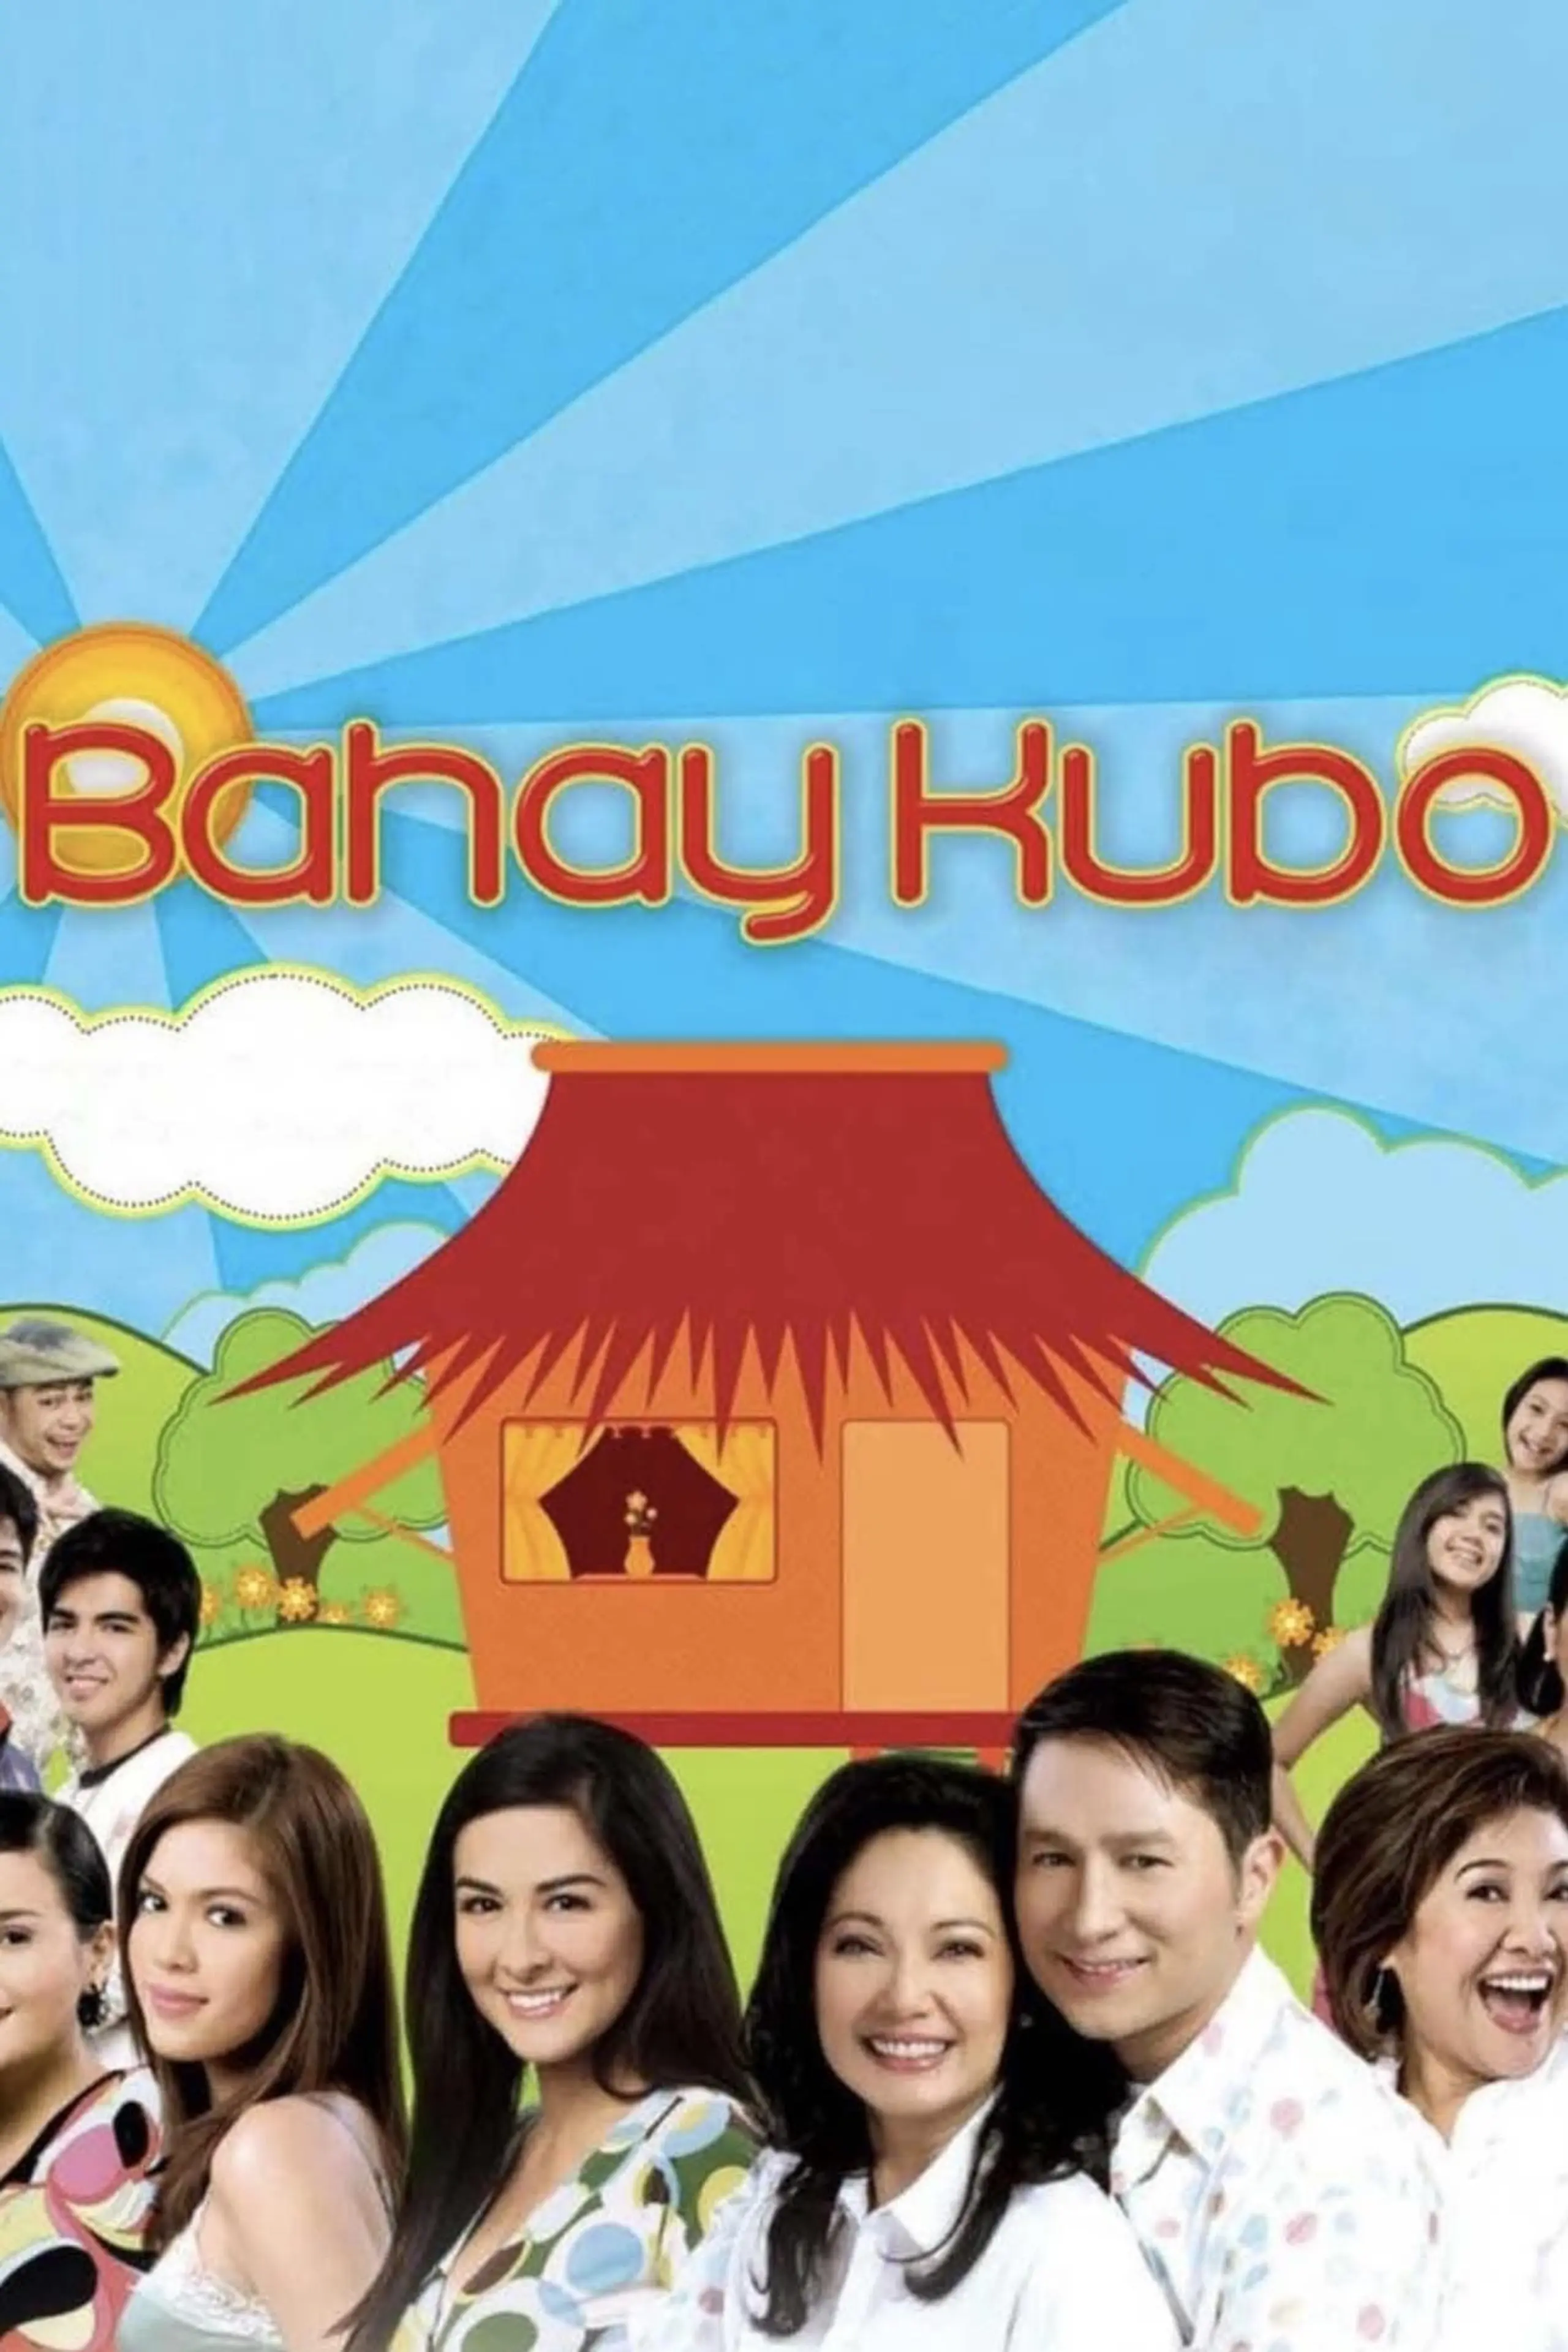 Bahay Kubo: A Pinoy Mano Po!